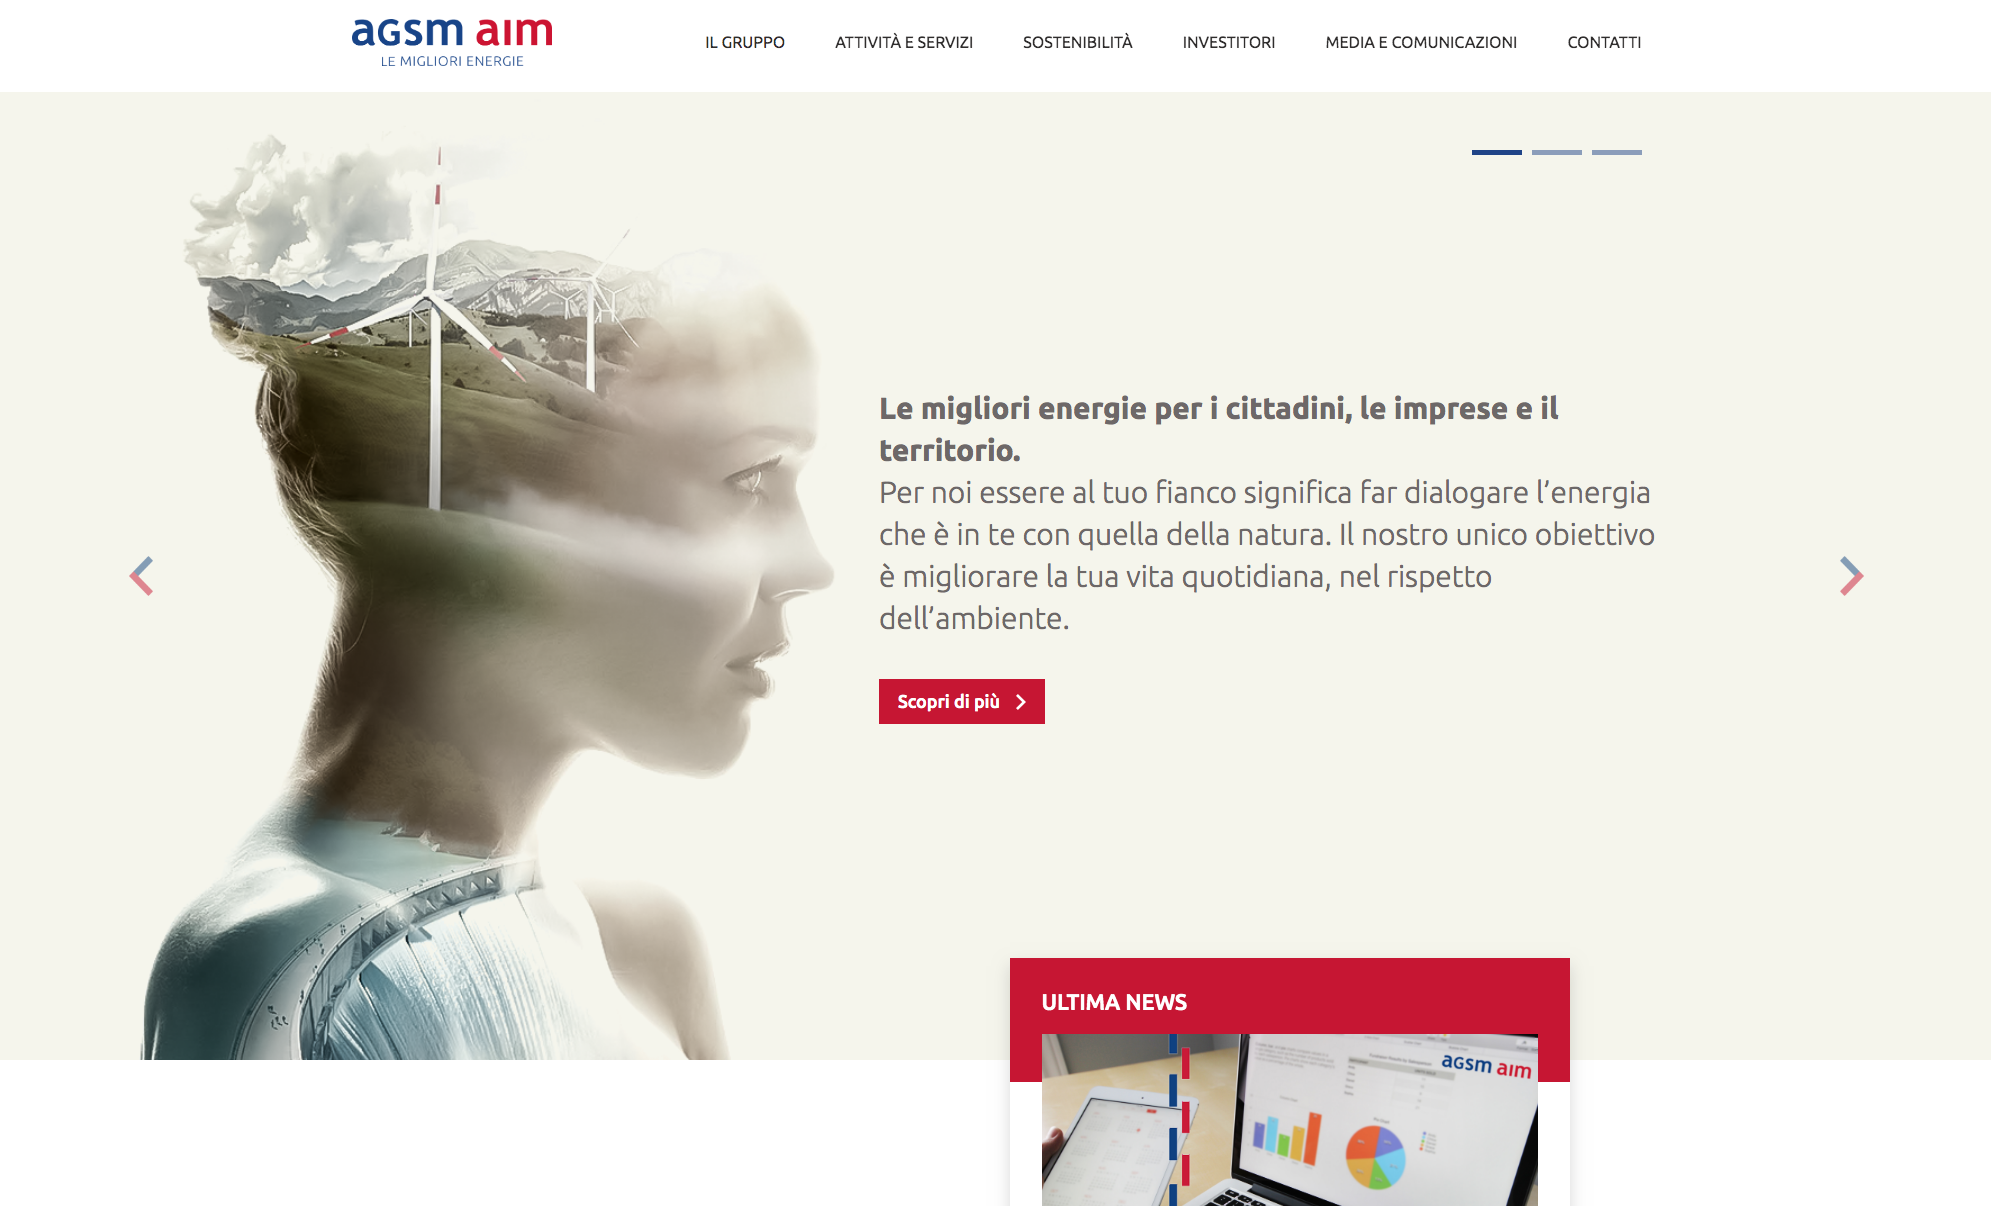 AgsmAim: è online il nuovo sito istituzionale